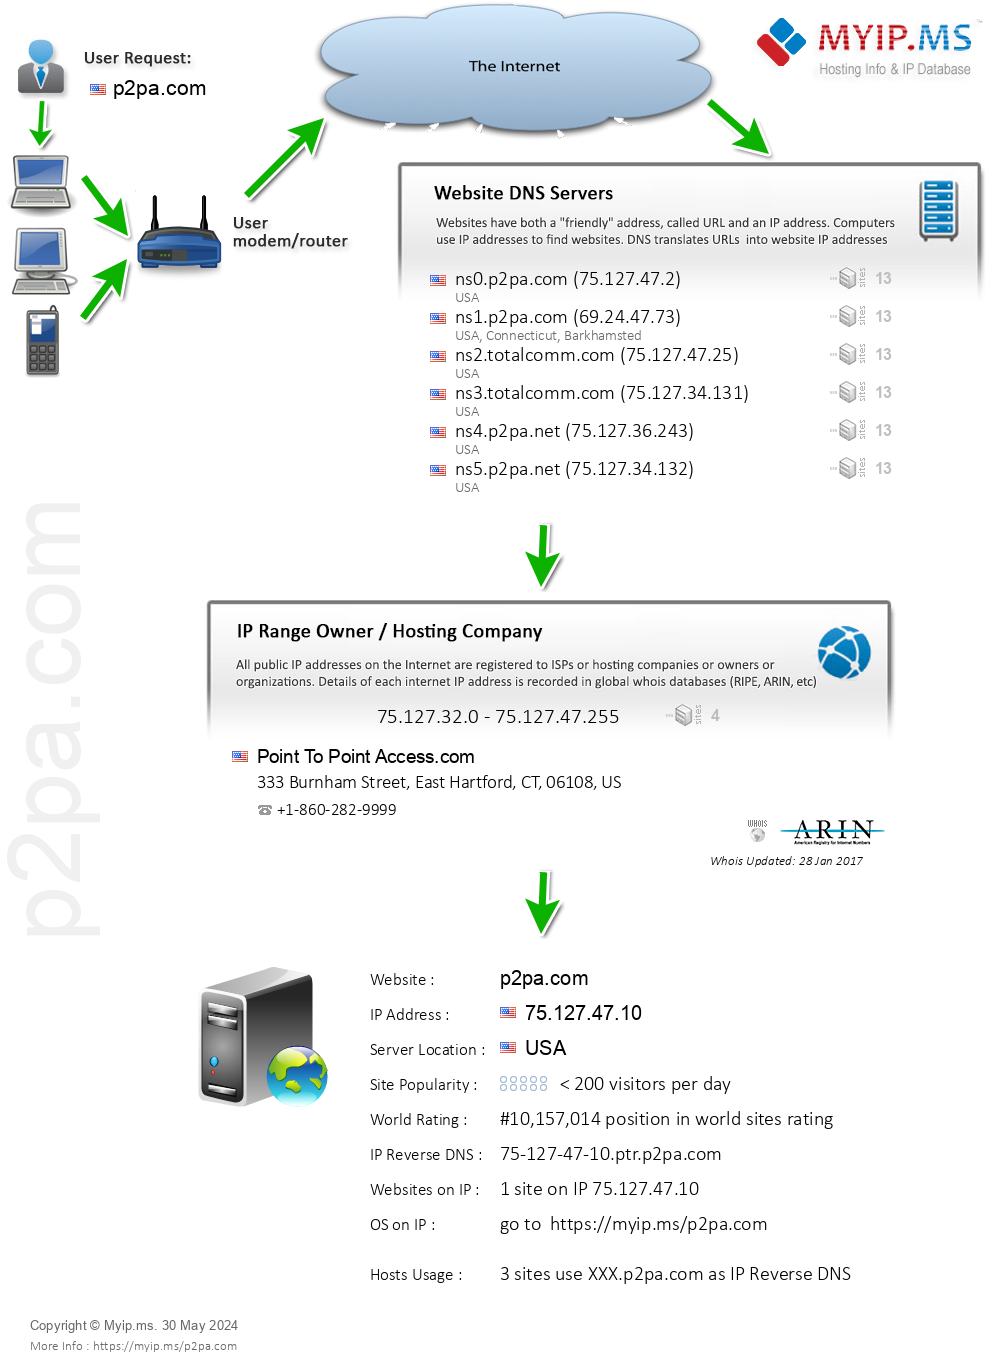 P2pa.com - Website Hosting Visual IP Diagram